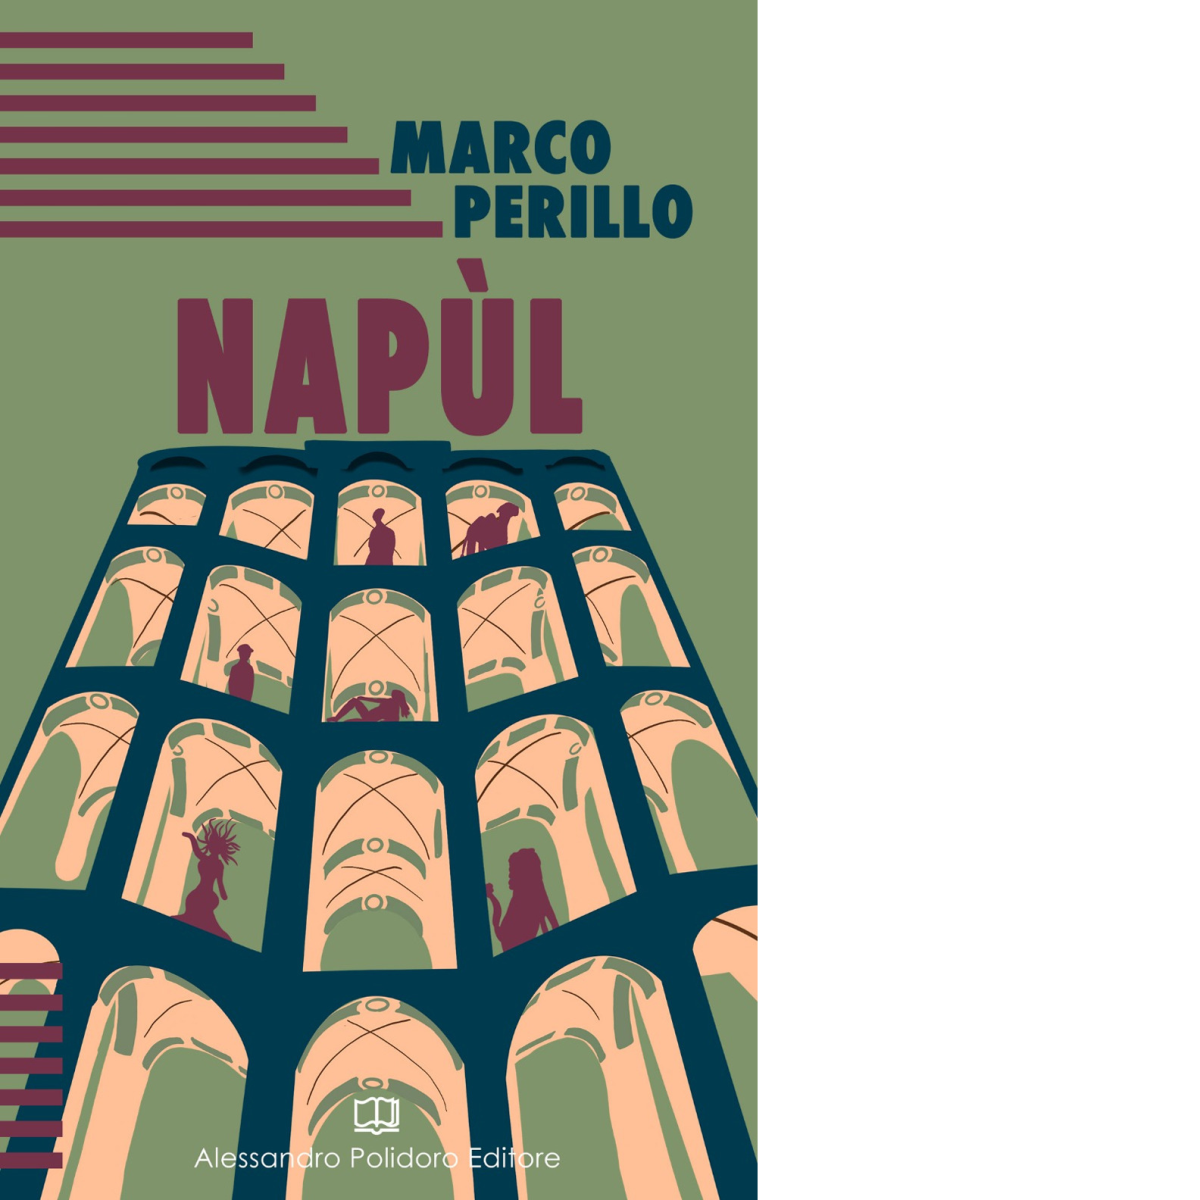 Nap?l di Marco Perillo,  2020,  Alessandro Polidoro Editore